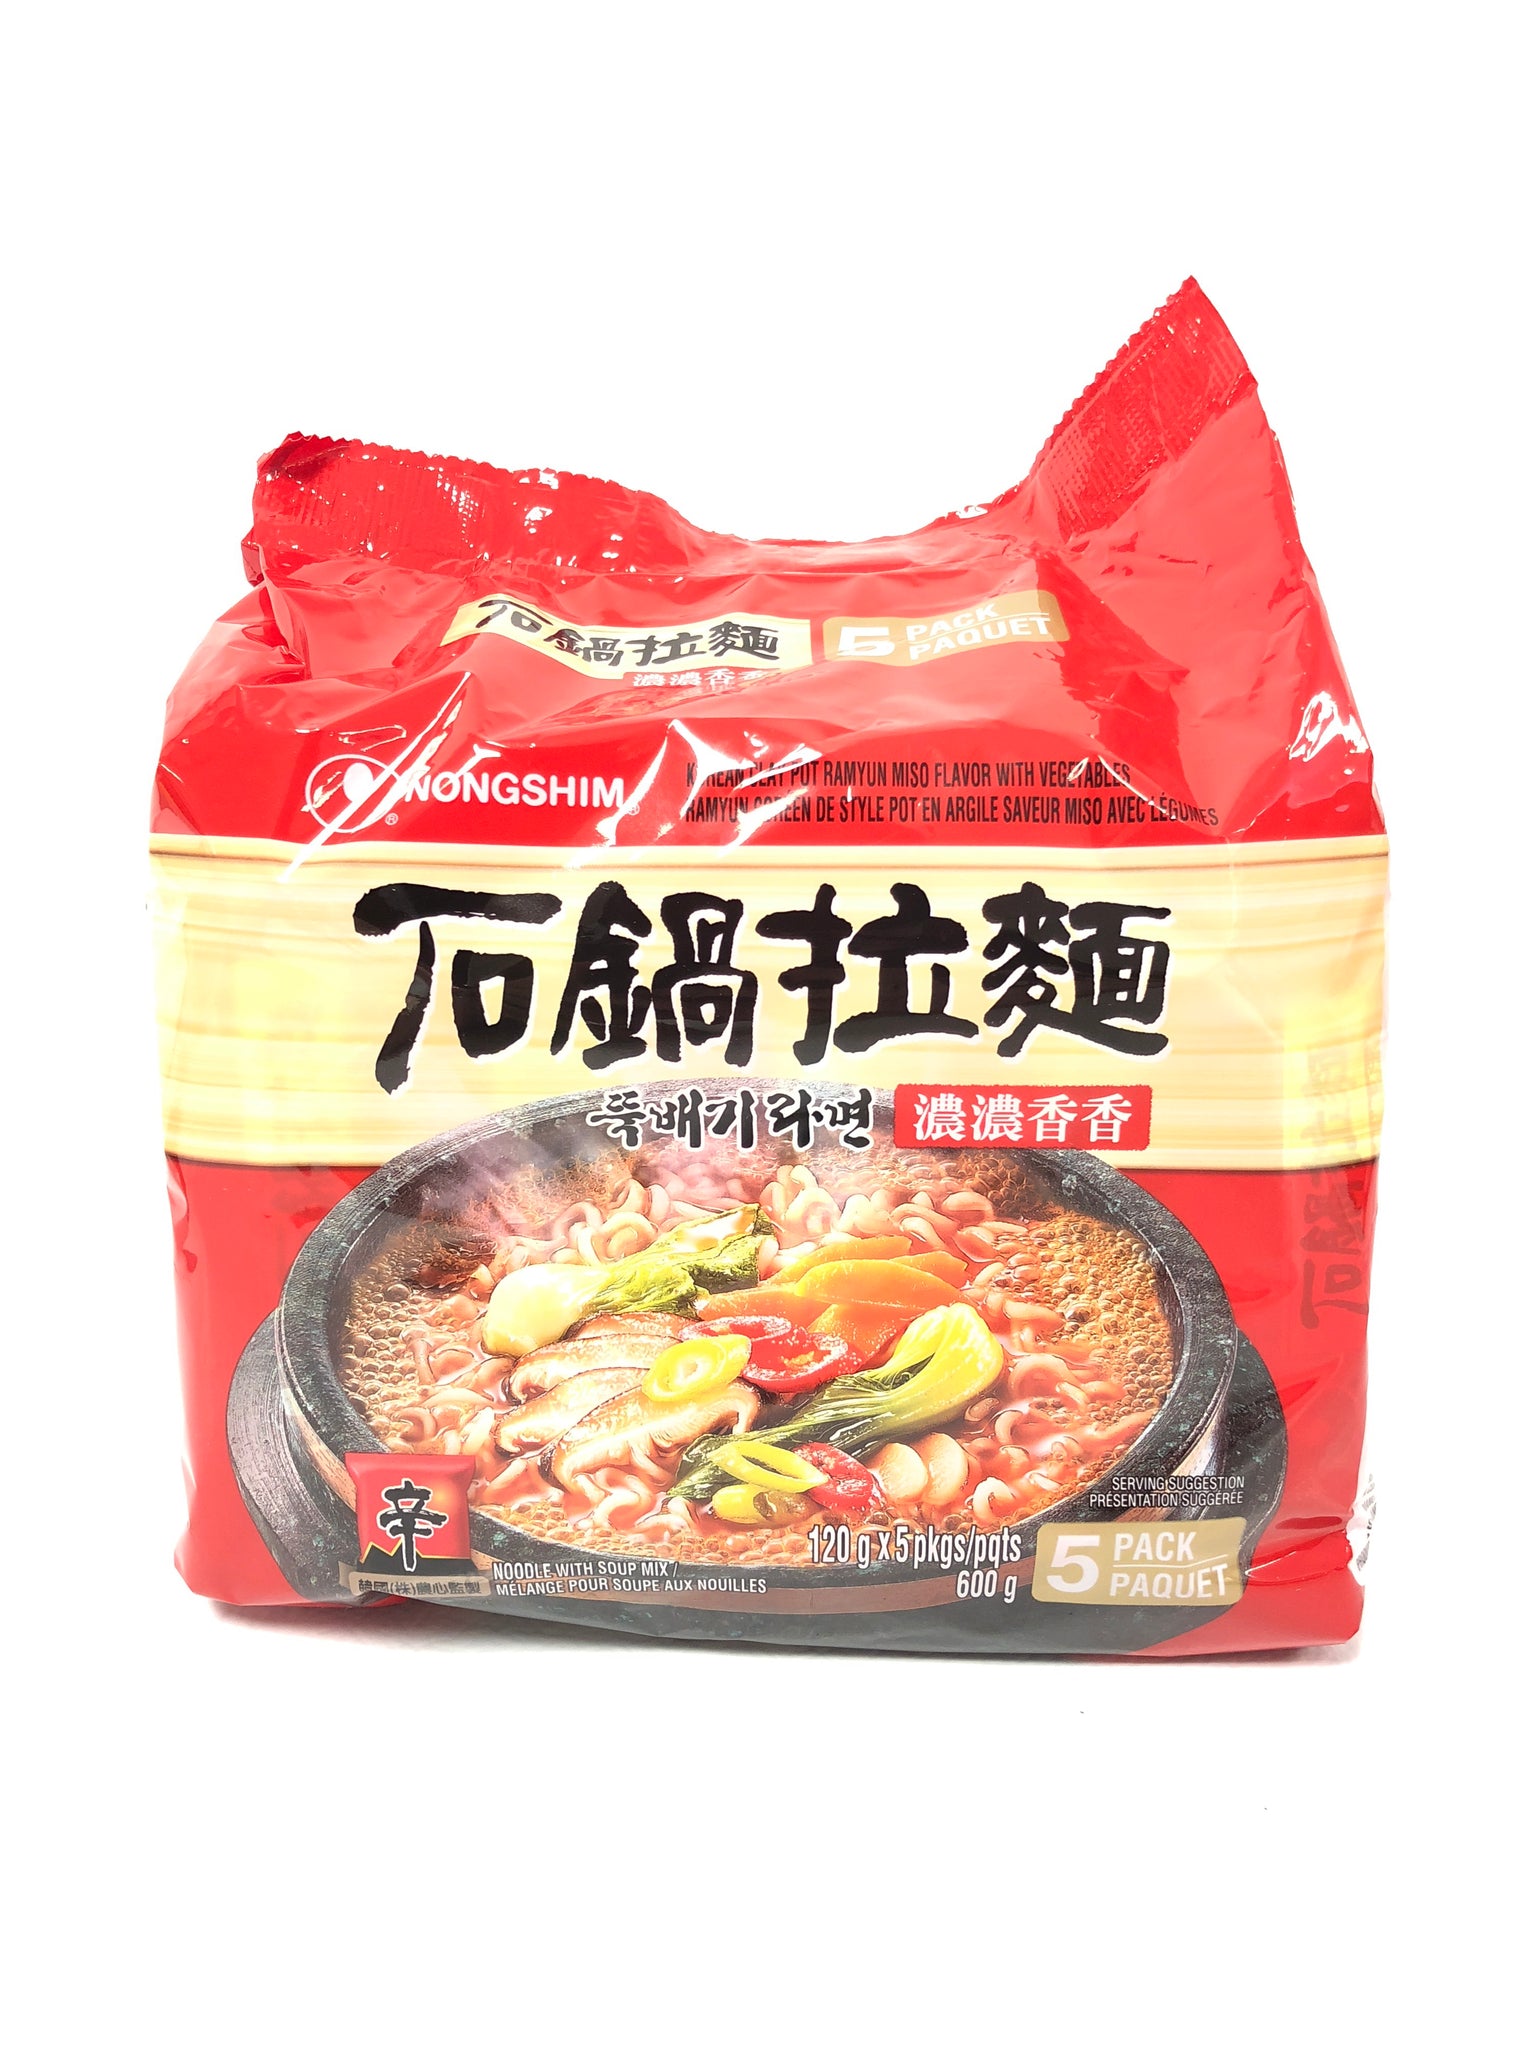 农心辛拉面石锅拉面 5*120g Nongshim Instant Ramen Noodle